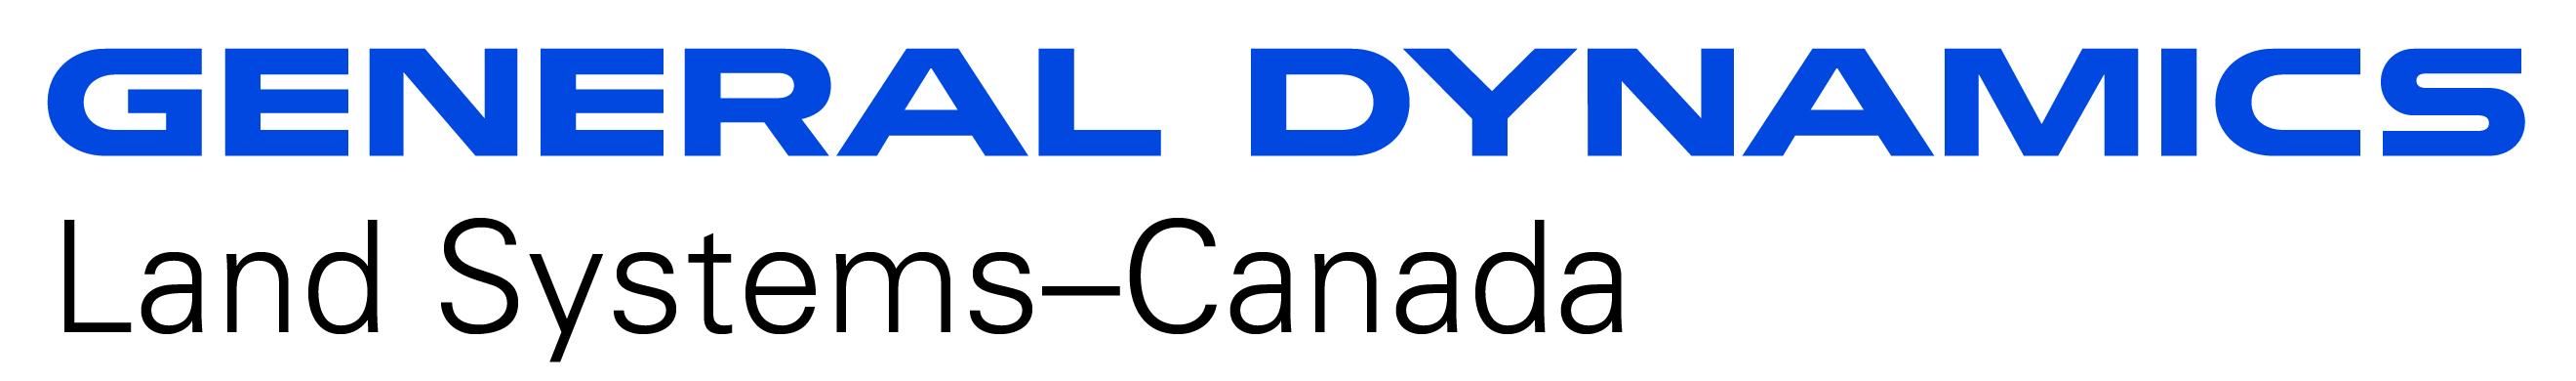 General Dynamics Land Systems - Canada logo